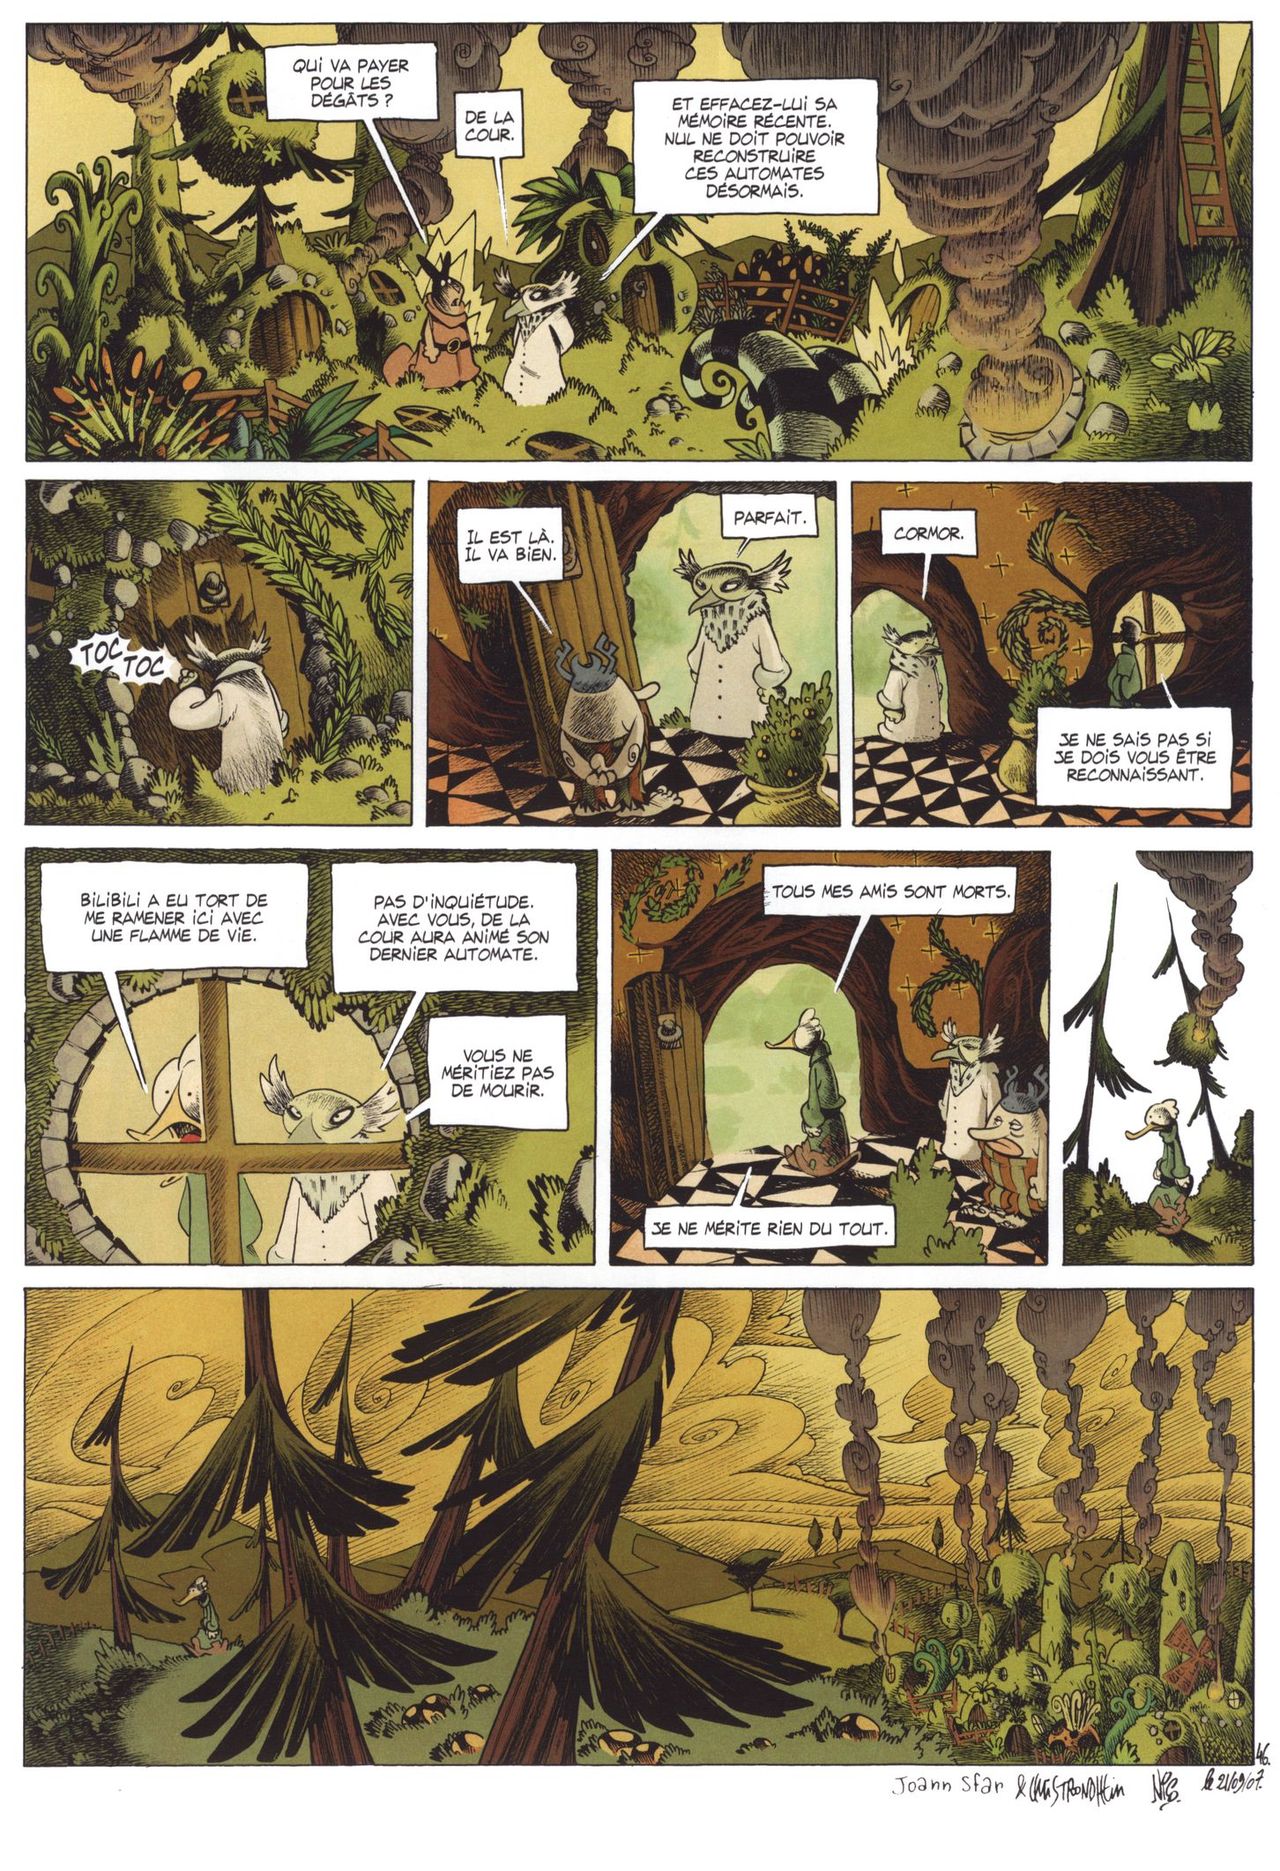 Donjon monsters - Volume 12 - Le grimoire de linventeur numero d'image 51